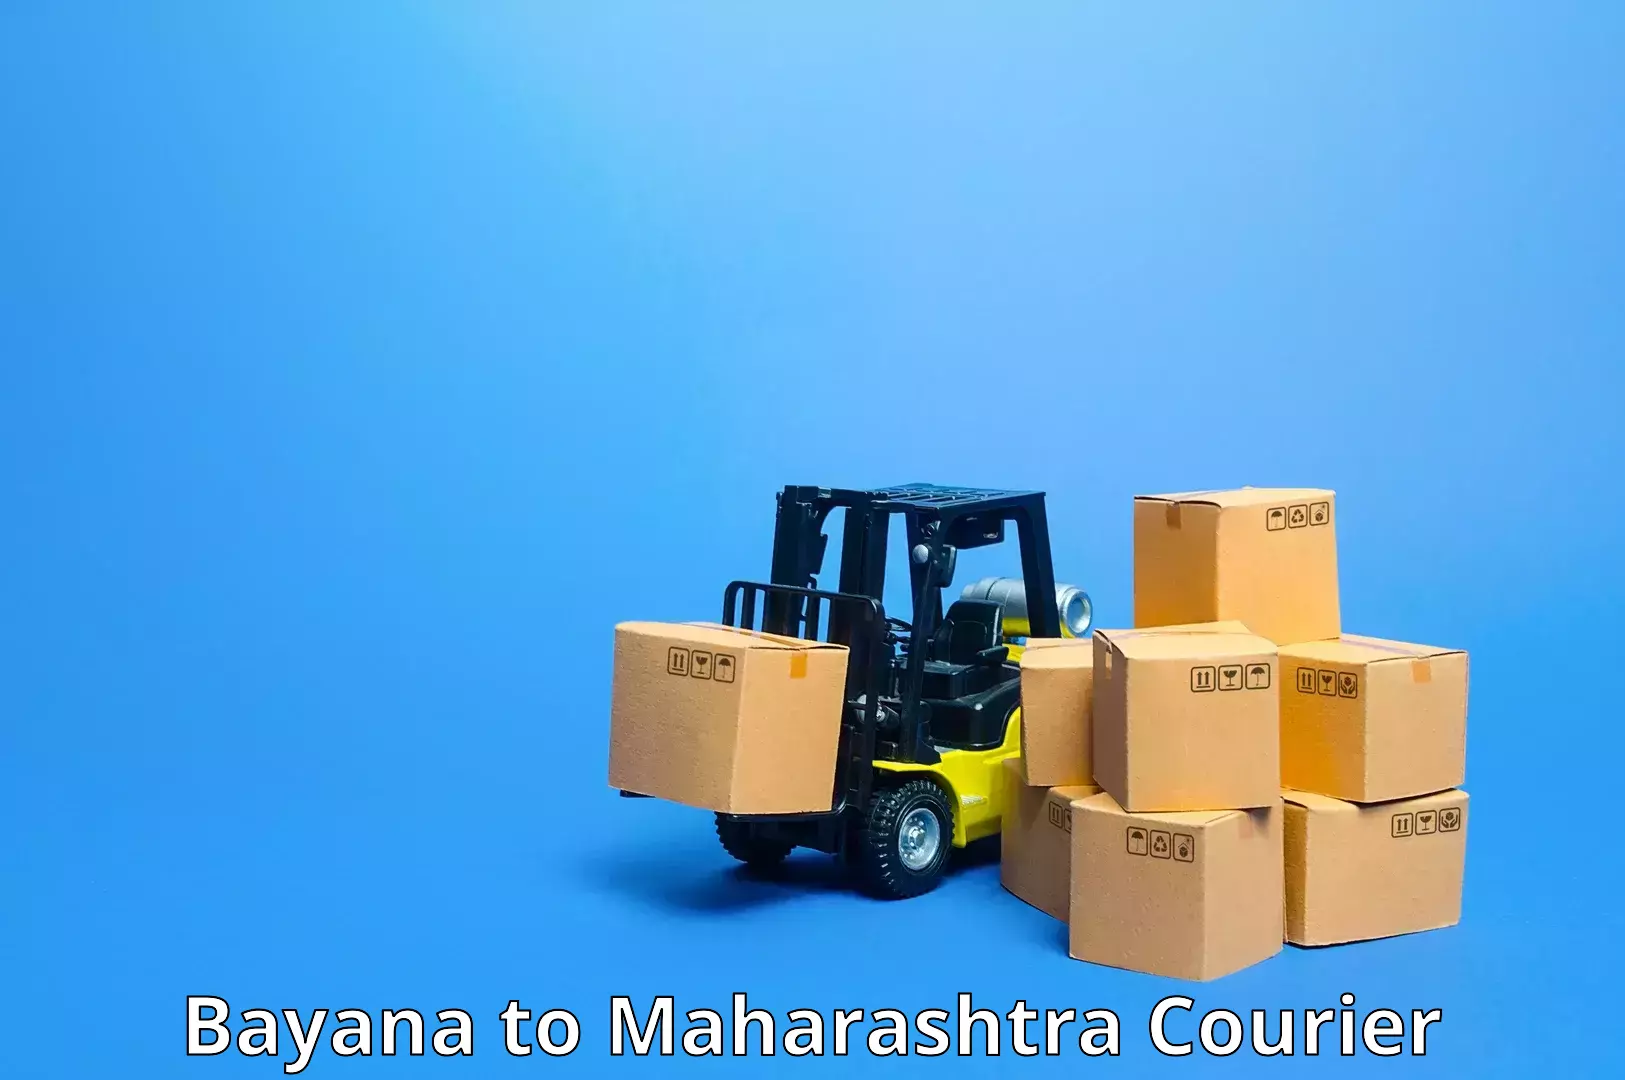 Digital courier platforms Bayana to Maharashtra